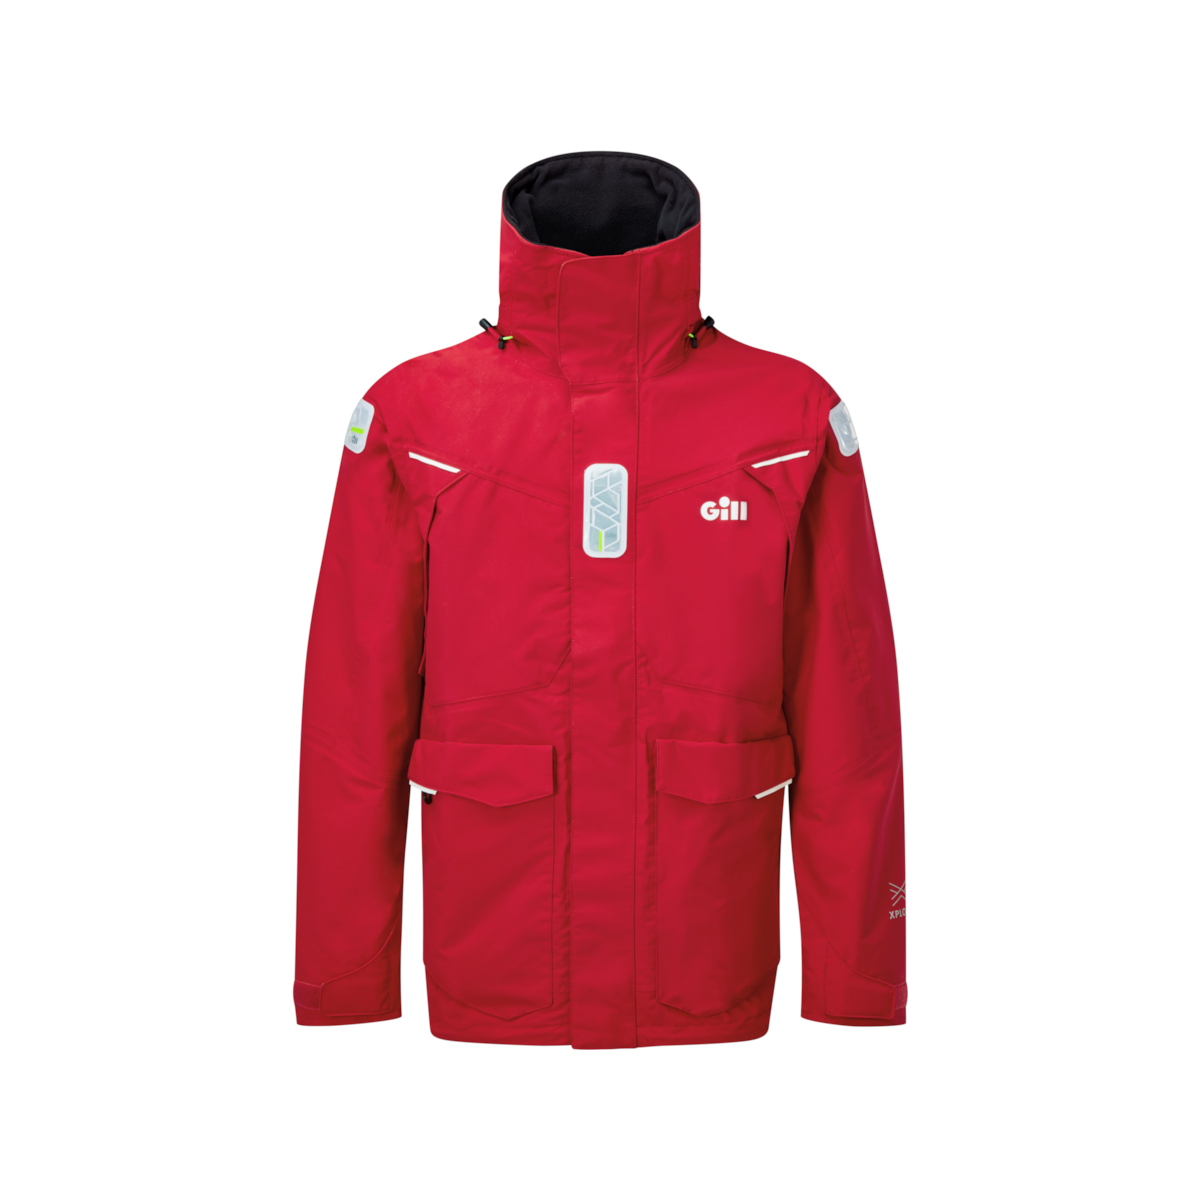 Gill OS25 veste de voile offshore homme rouge, taille M